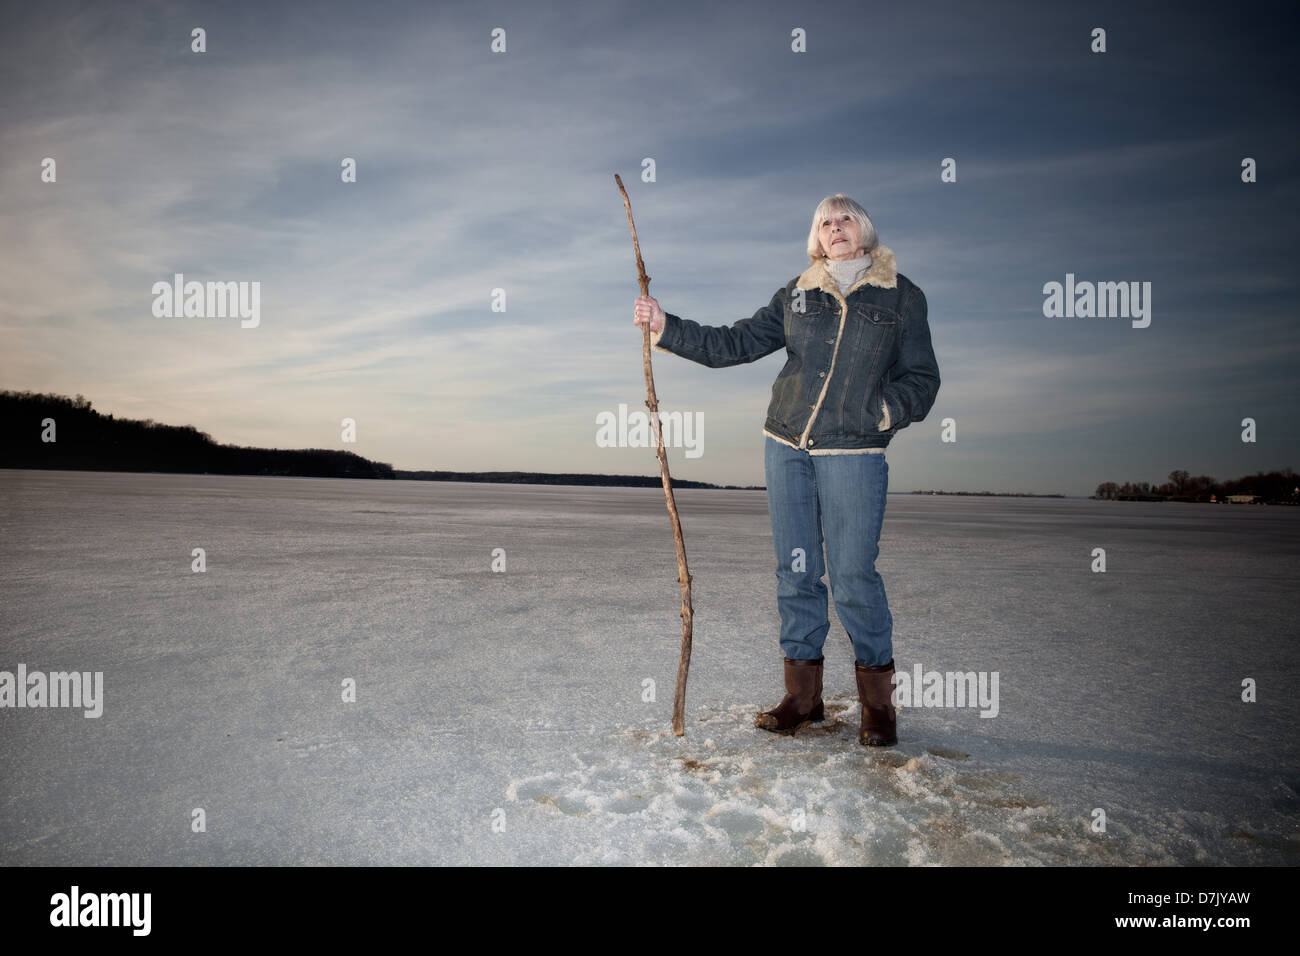 Portrait de l'environnement de la femme dans ses 70 Comité permanent sur le lac holding stick canne Banque D'Images